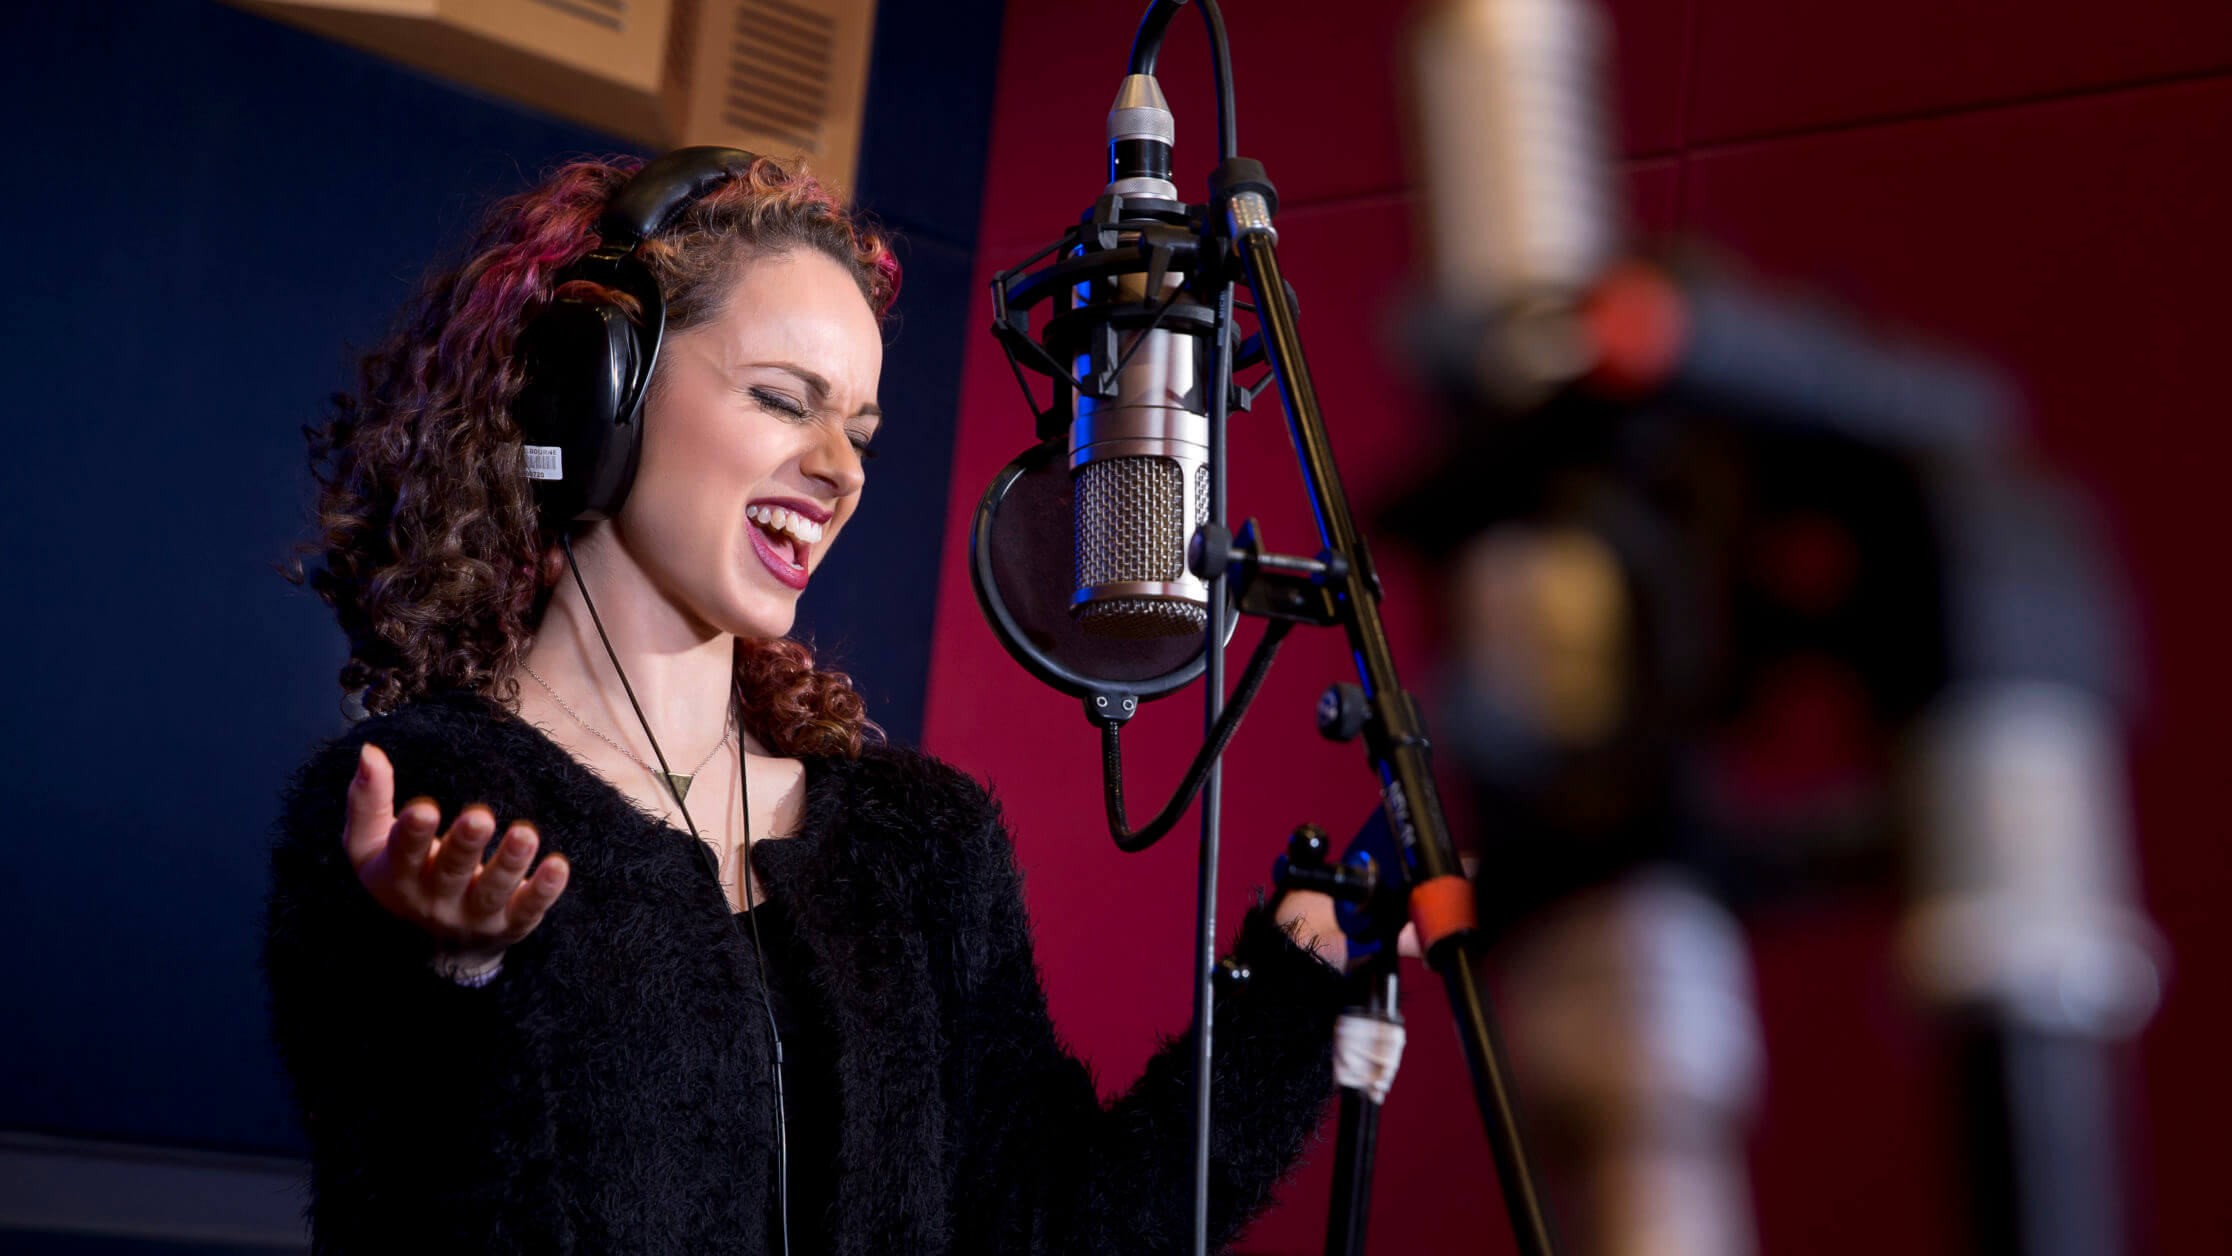 Student singing in studio